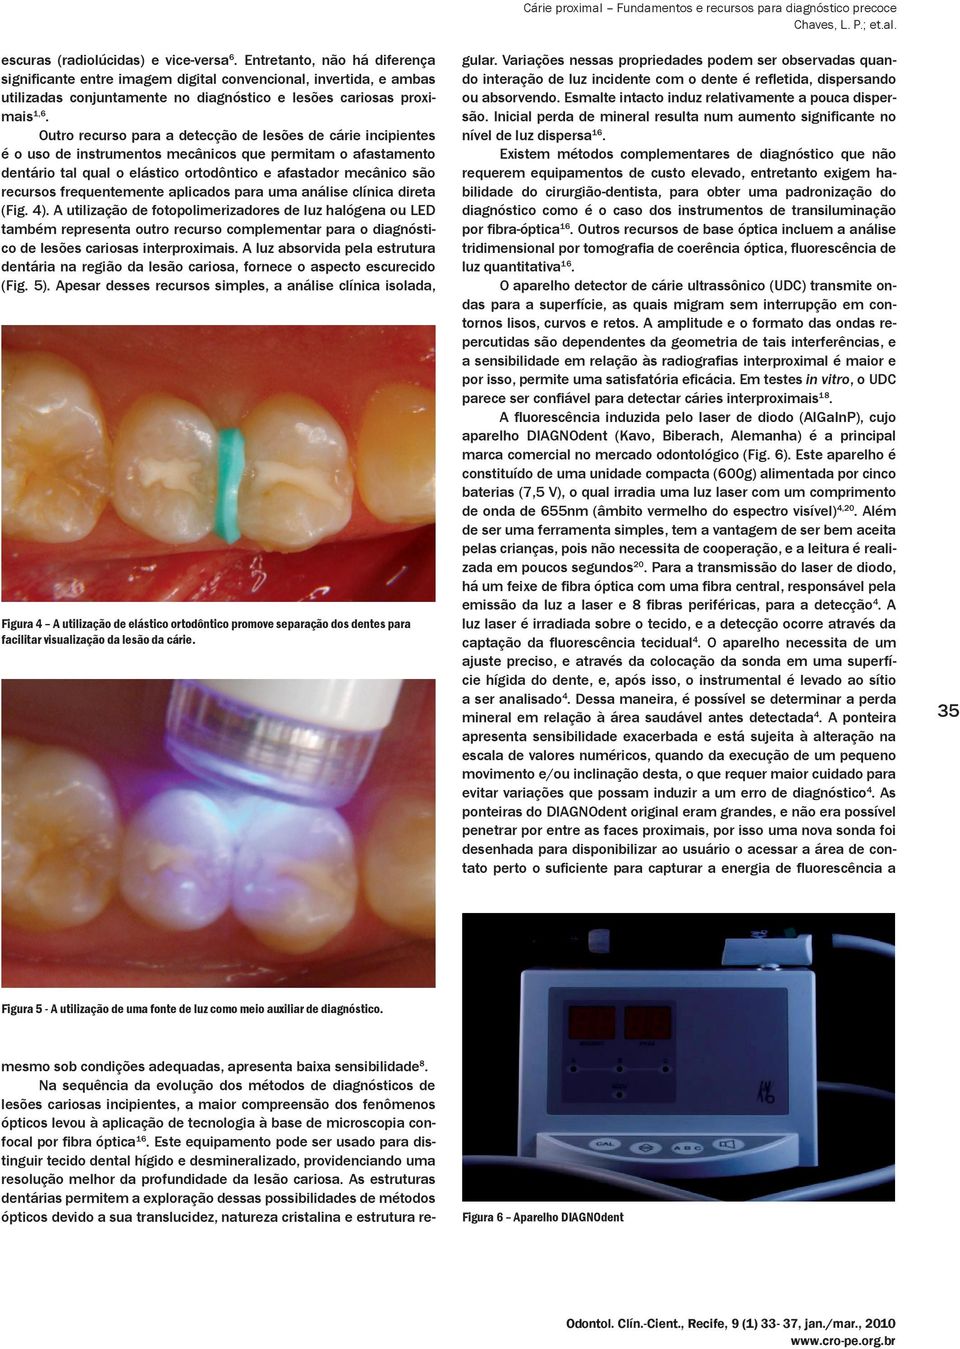 Outro recurso para a detecção de lesões de cárie incipientes é o uso de instrumentos mecânicos que permitam o afastamento dentário tal qual o elástico ortodôntico e afastador mecânico são recursos